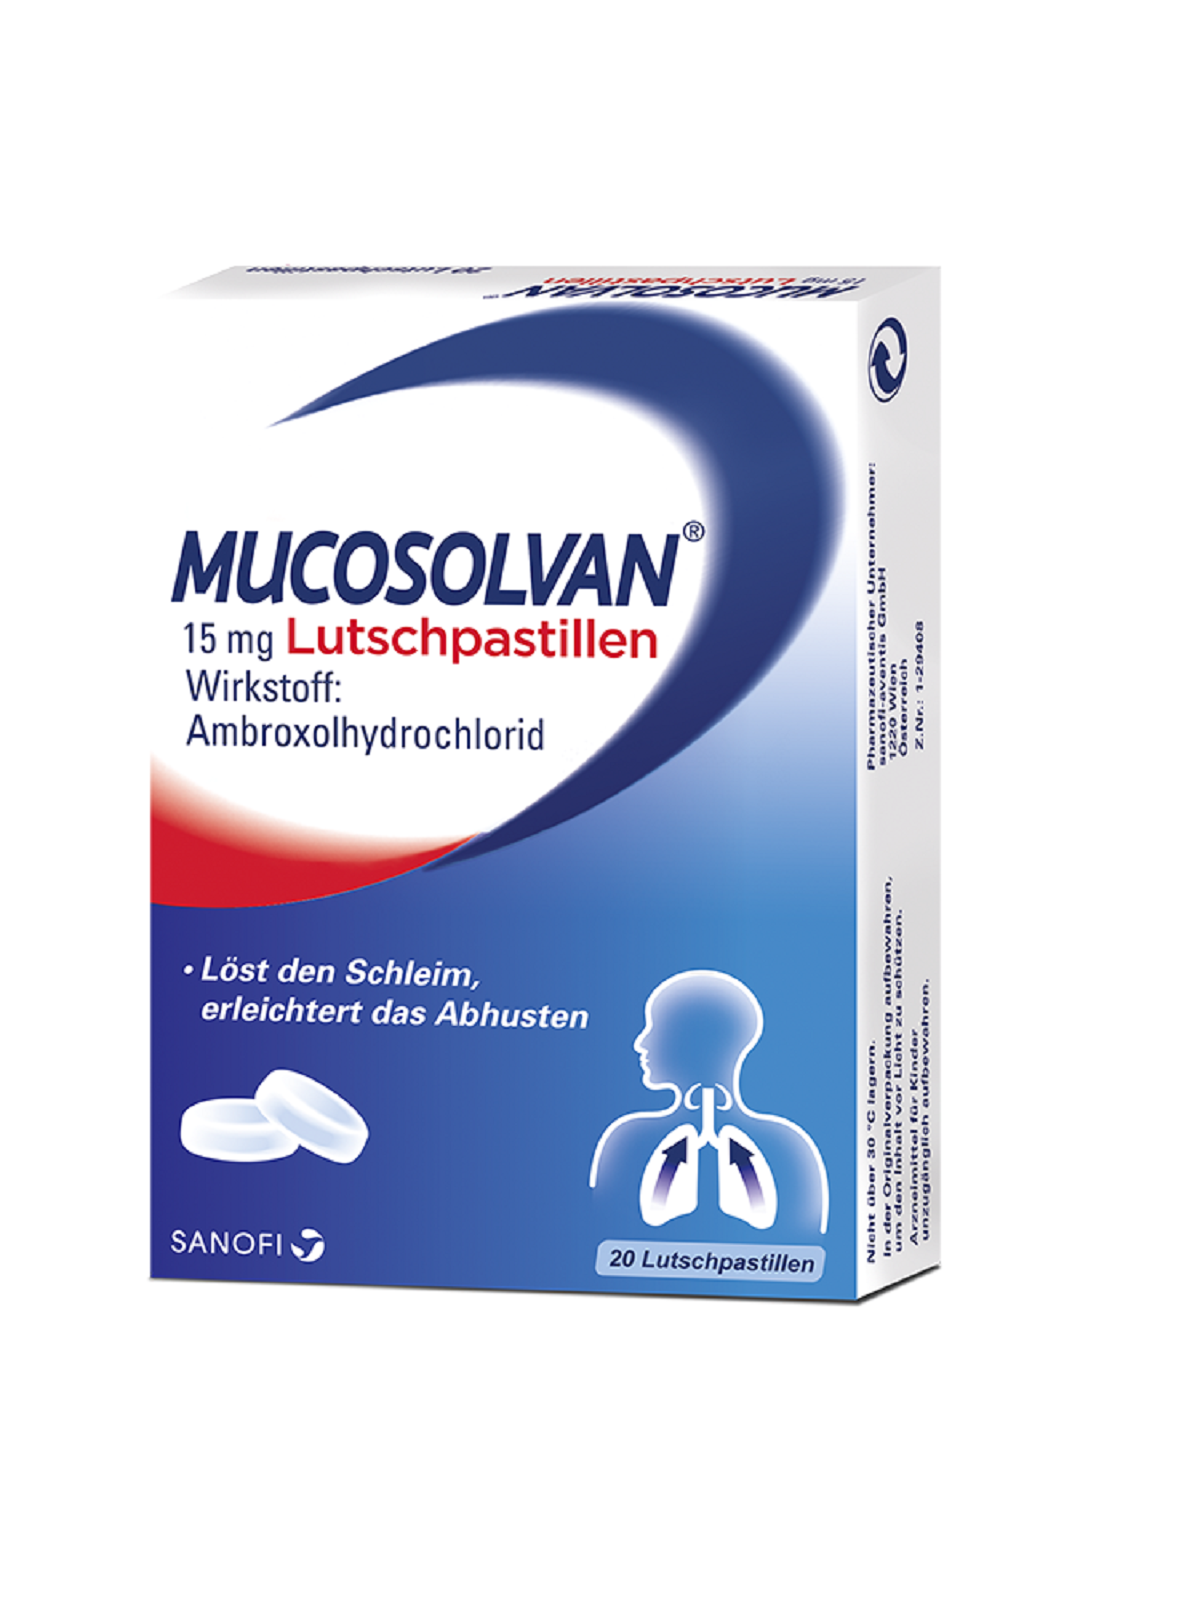 Mucosolvan 15 mg - Lutschpastillen